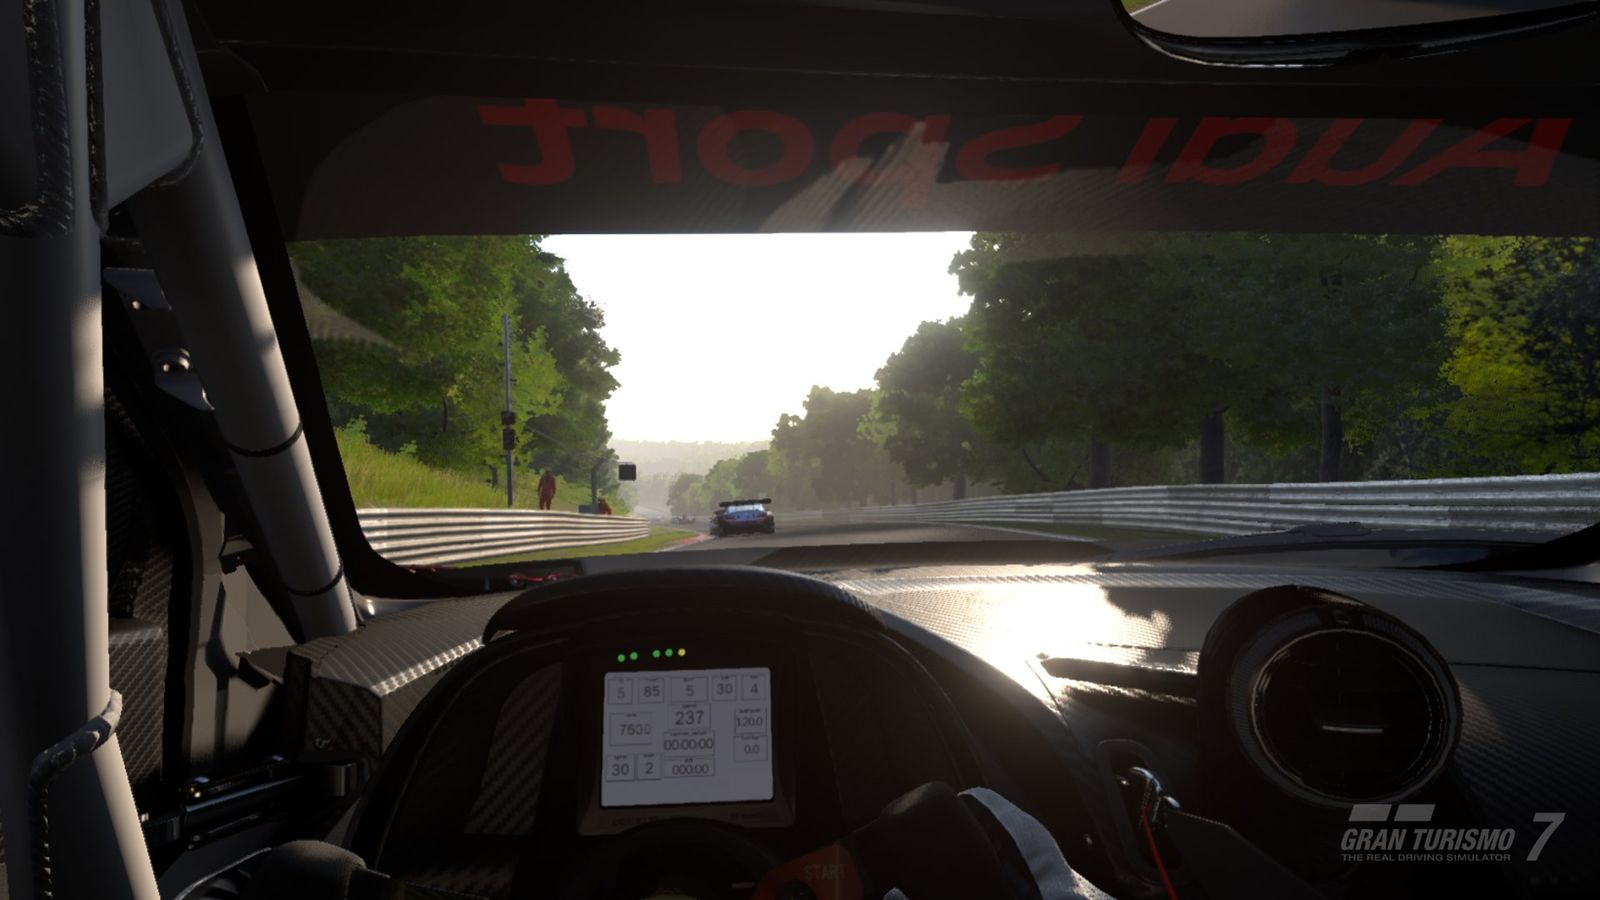 Gran Turismo 7 update 1.29